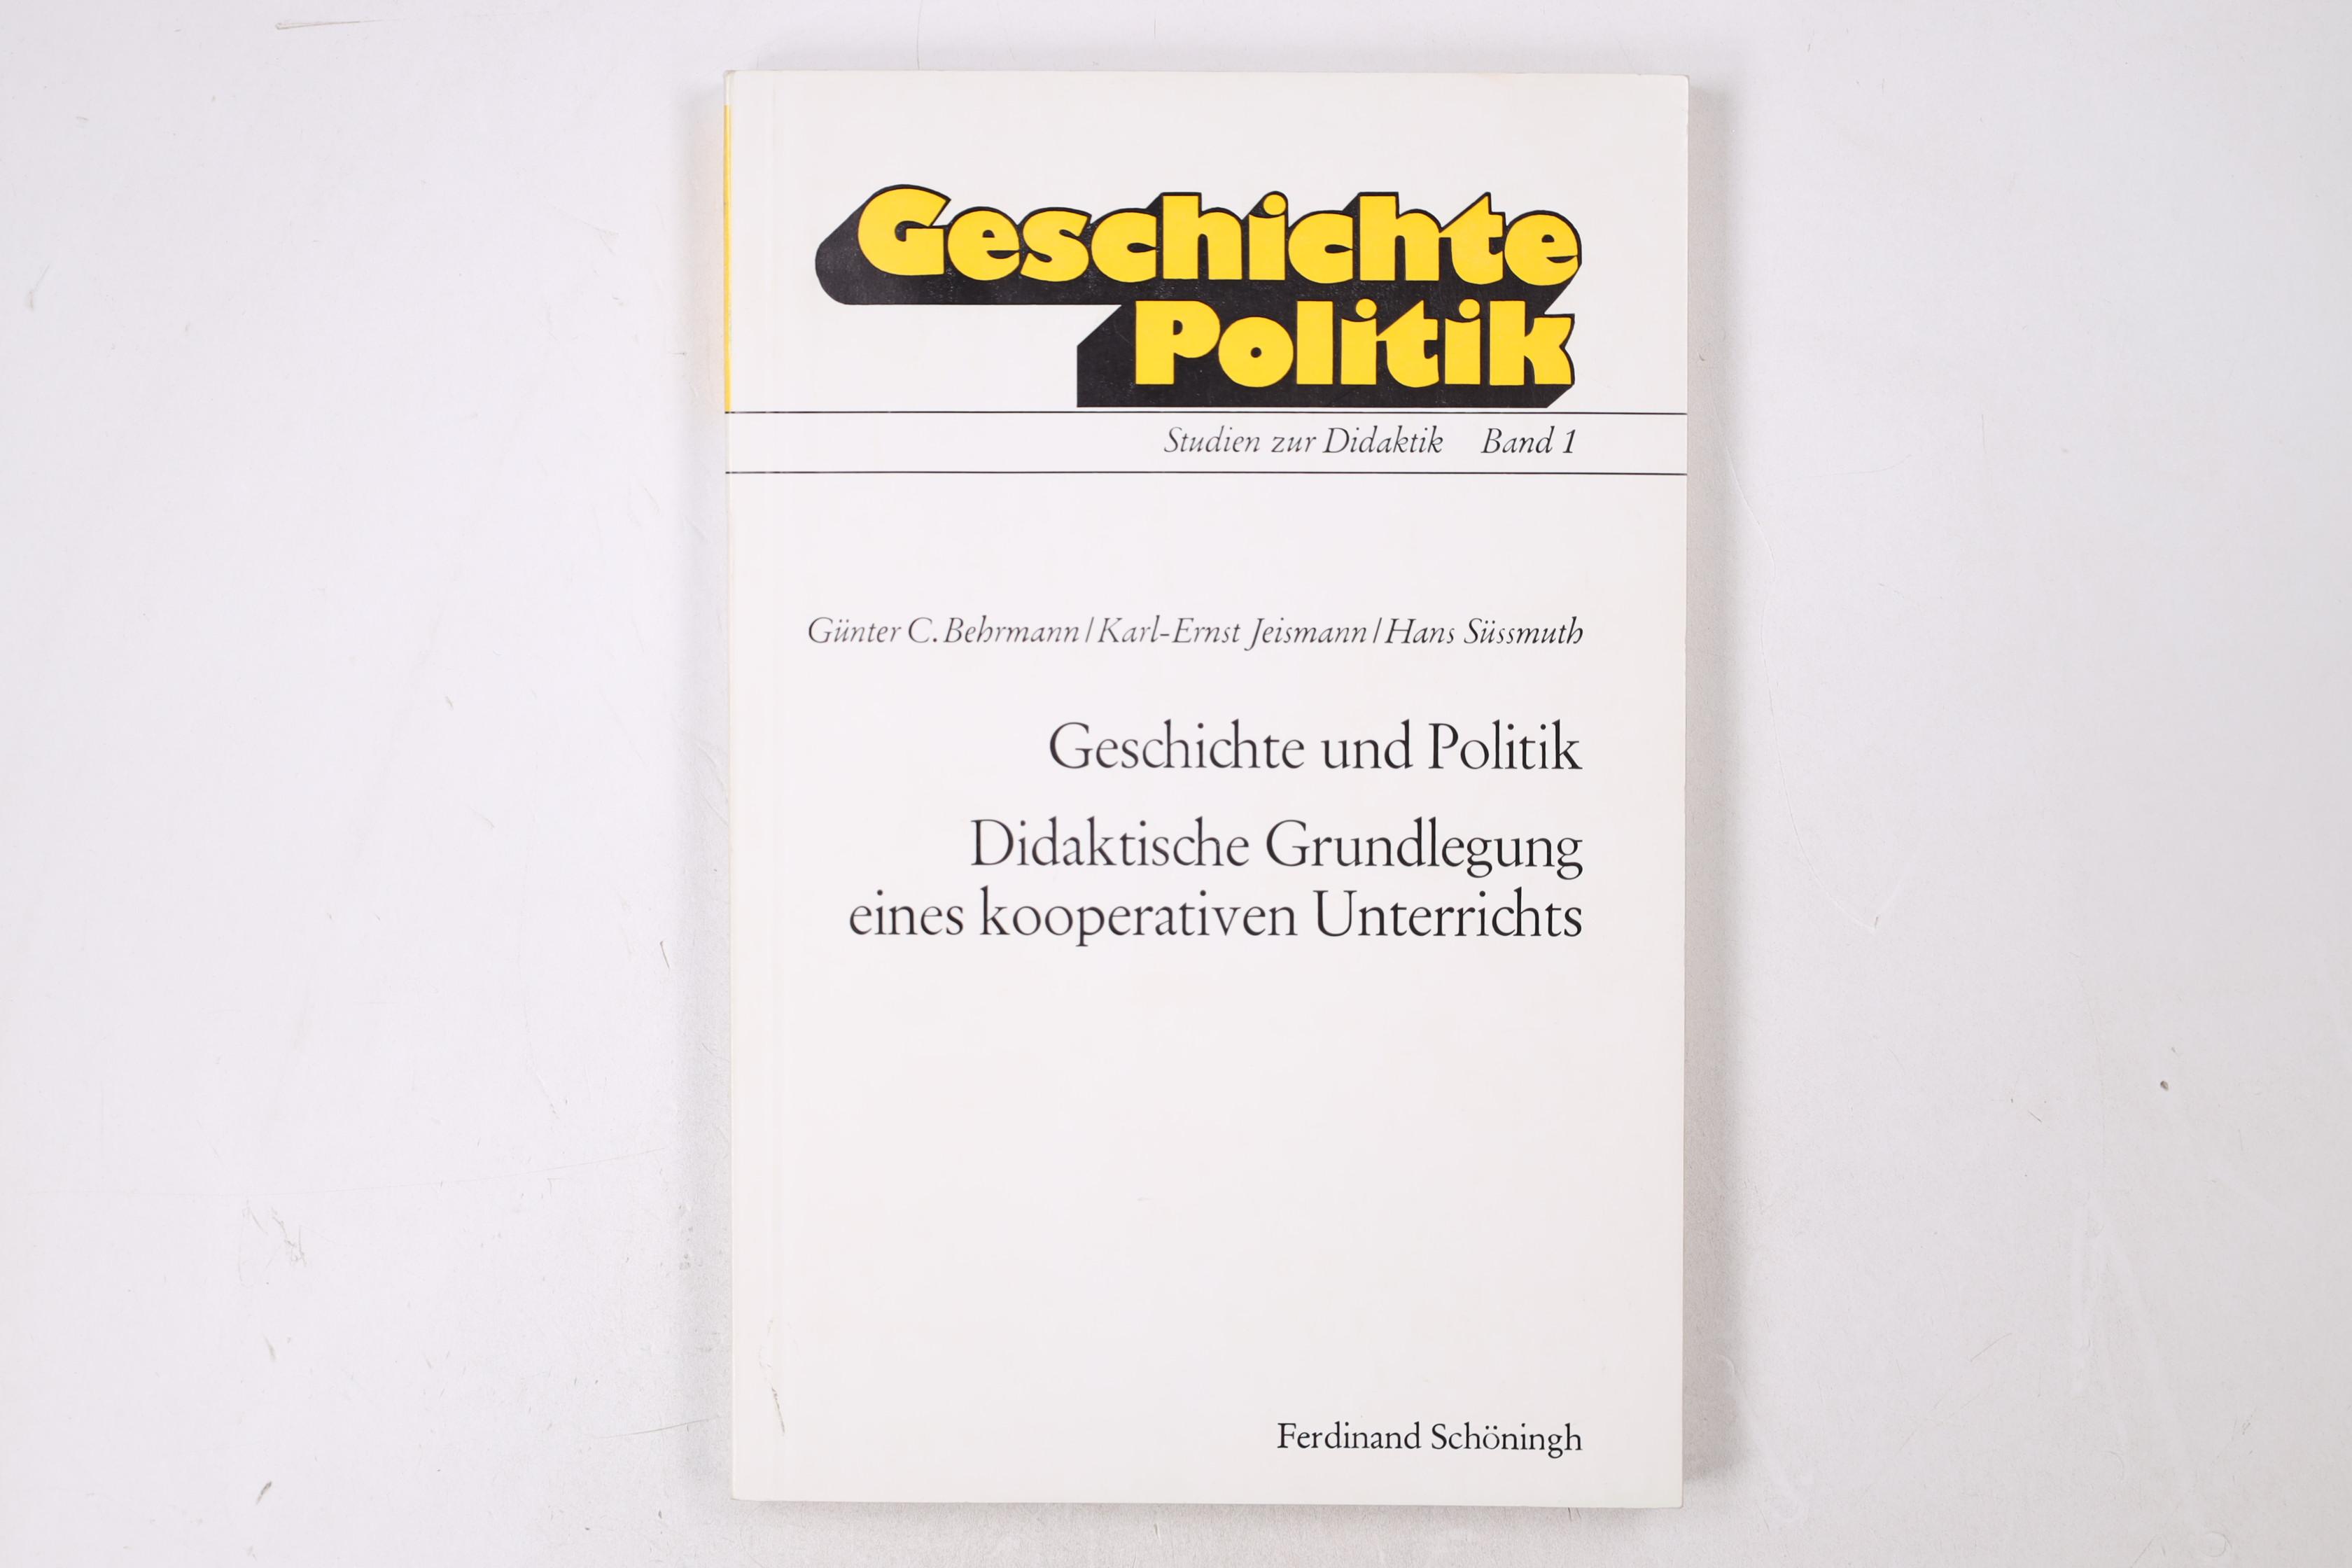 GESCHICHTE UND POLITIK, DIDAKTISCHE GRUNDLEGUNG EINES KOOPERATIVEN UNTERRICHTS. - Behrmann, Günter C.; Jeismann, Karl-Ernst; Süssmuth, Hans; ;